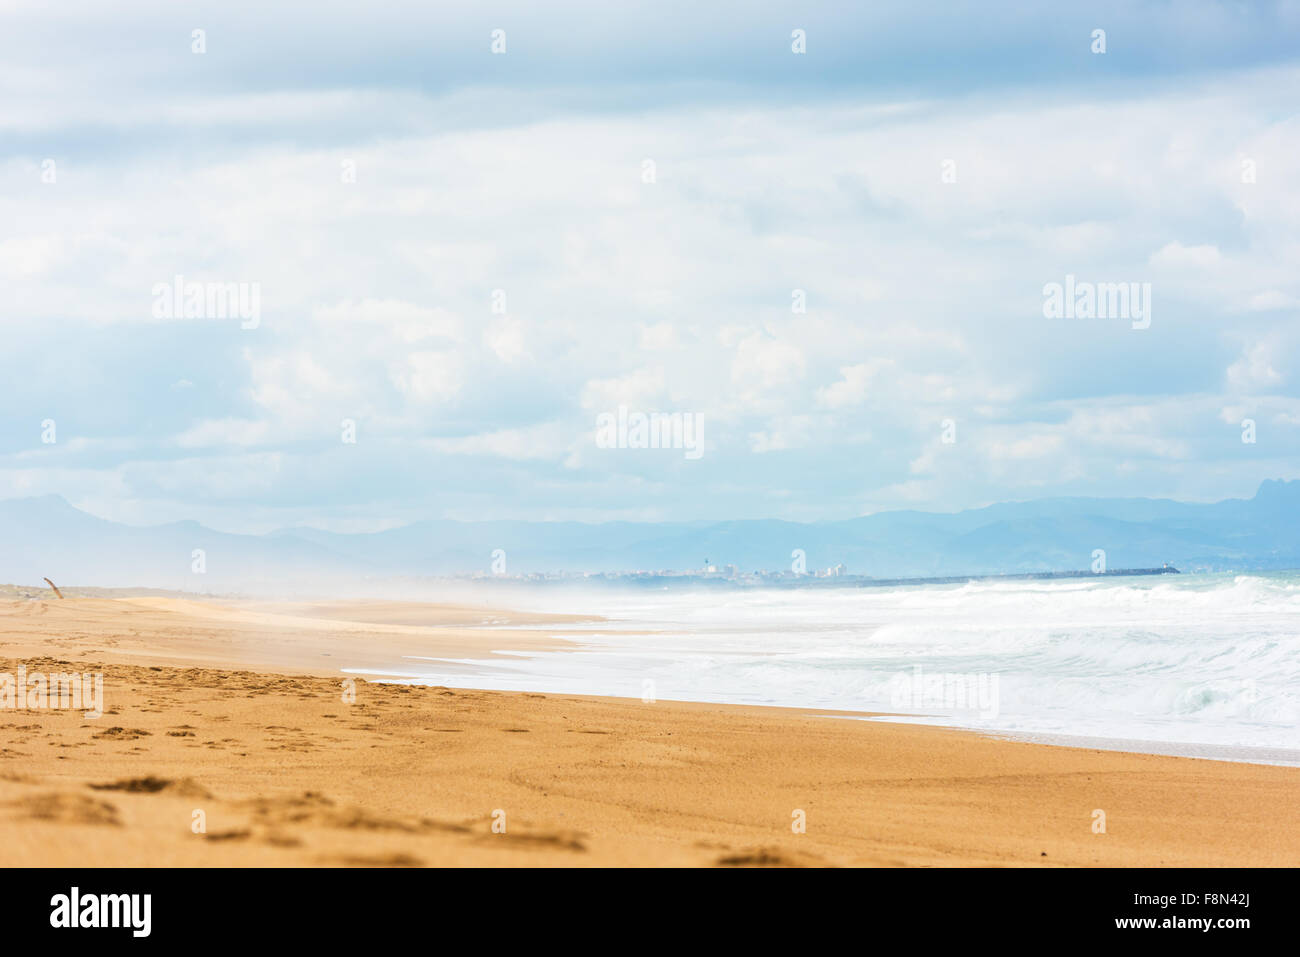 Longue plage avec des vagues de l'océan Atlantique. Le Département de la Gironde, France. Tourné avec un focus sélectif Banque D'Images